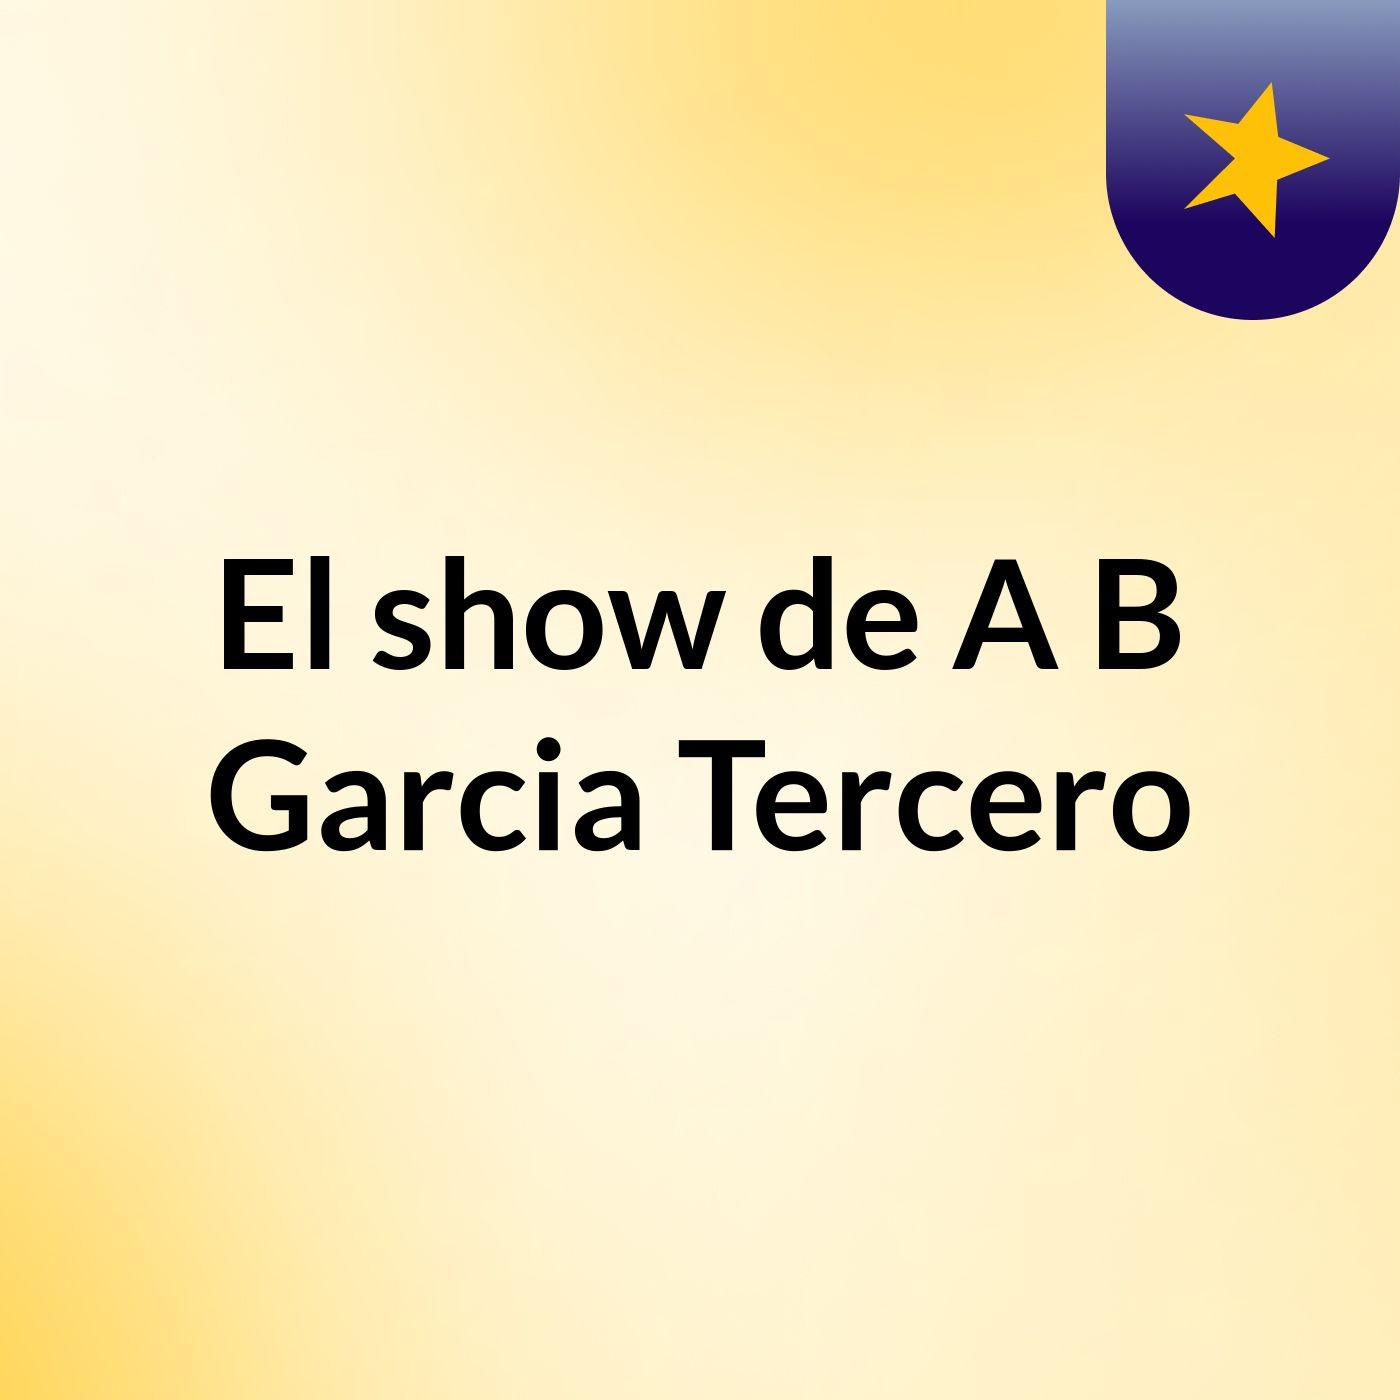 El show de A B Garcia Tercero